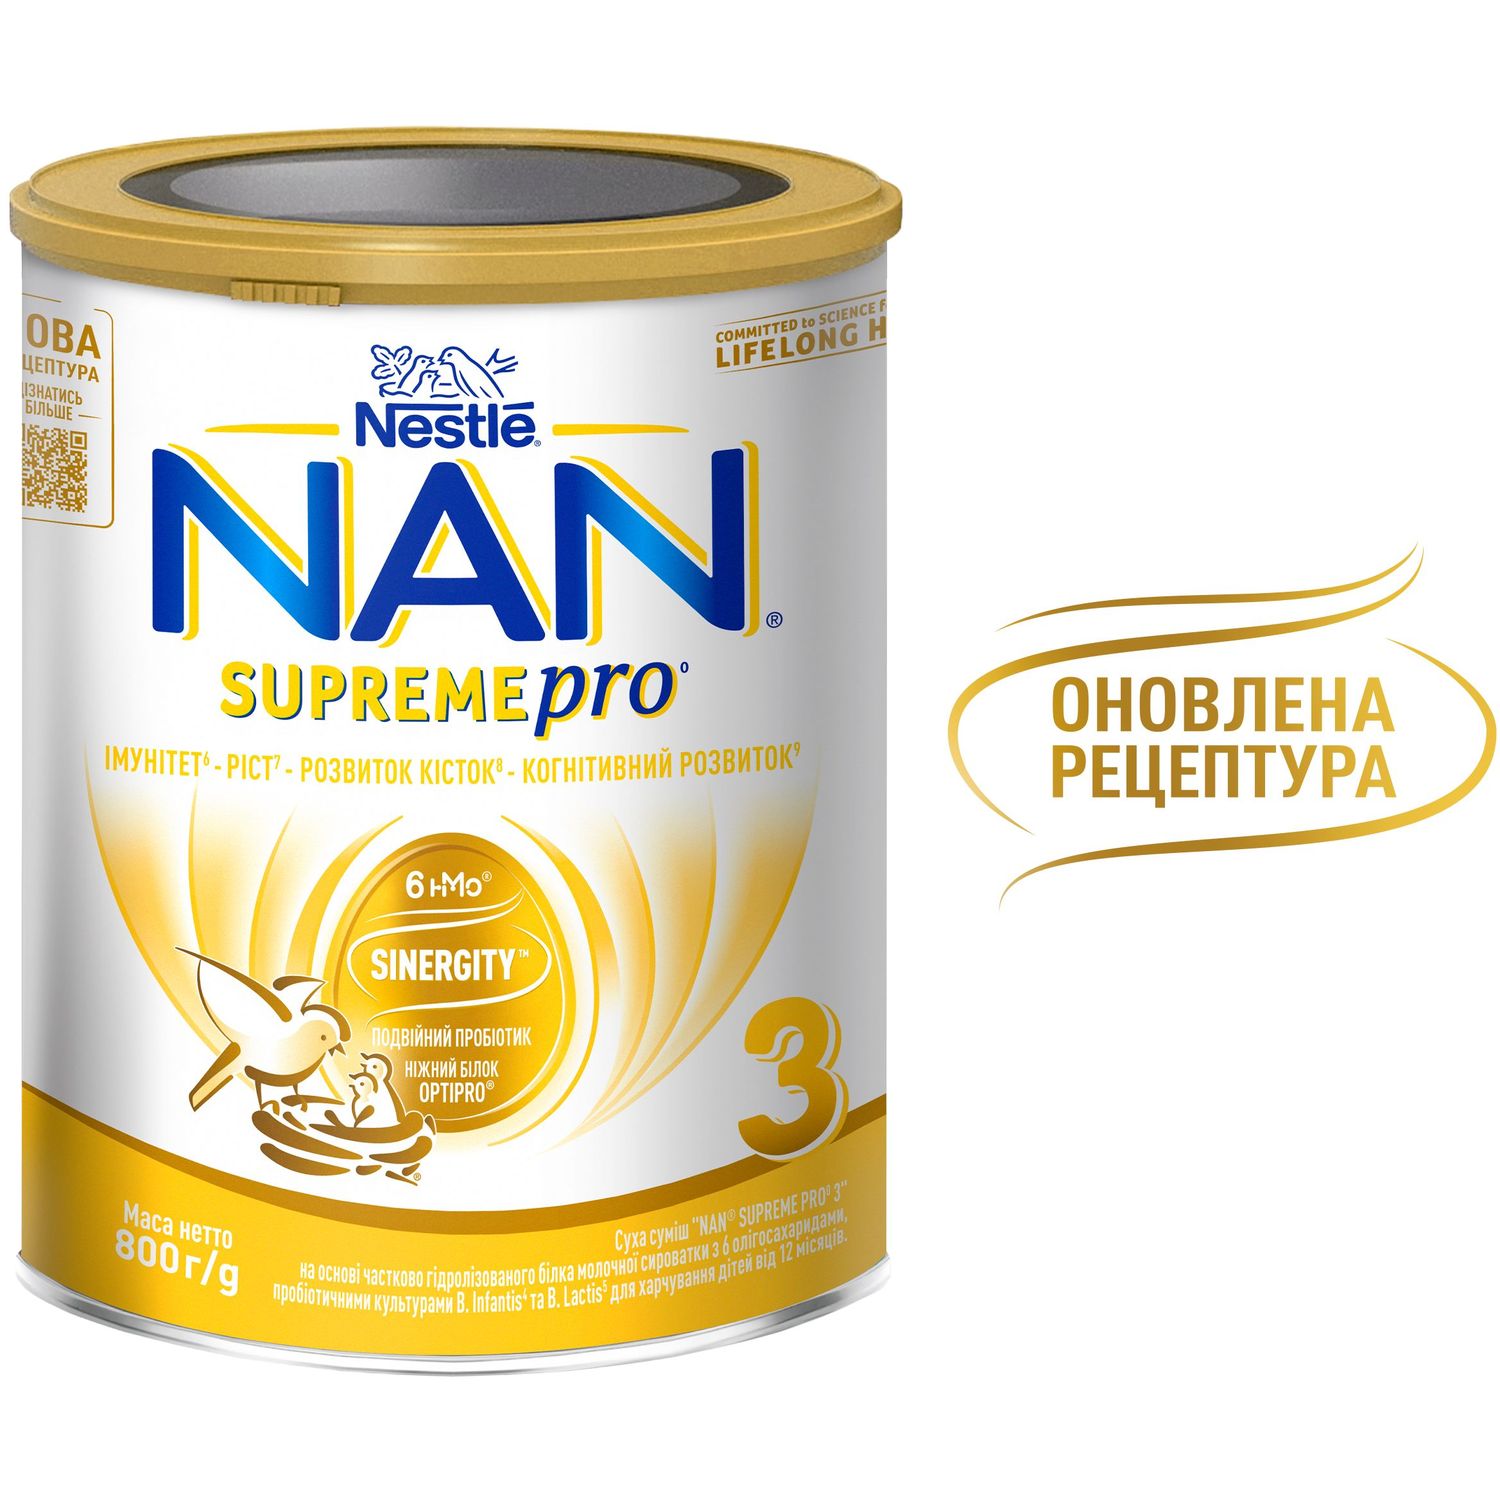 Сухая смесь NAN 3 Supreme Pro с 6 олигосахаридами и двойным пробиотиком для питания детей от 12 месяцев 800 г - фото 5